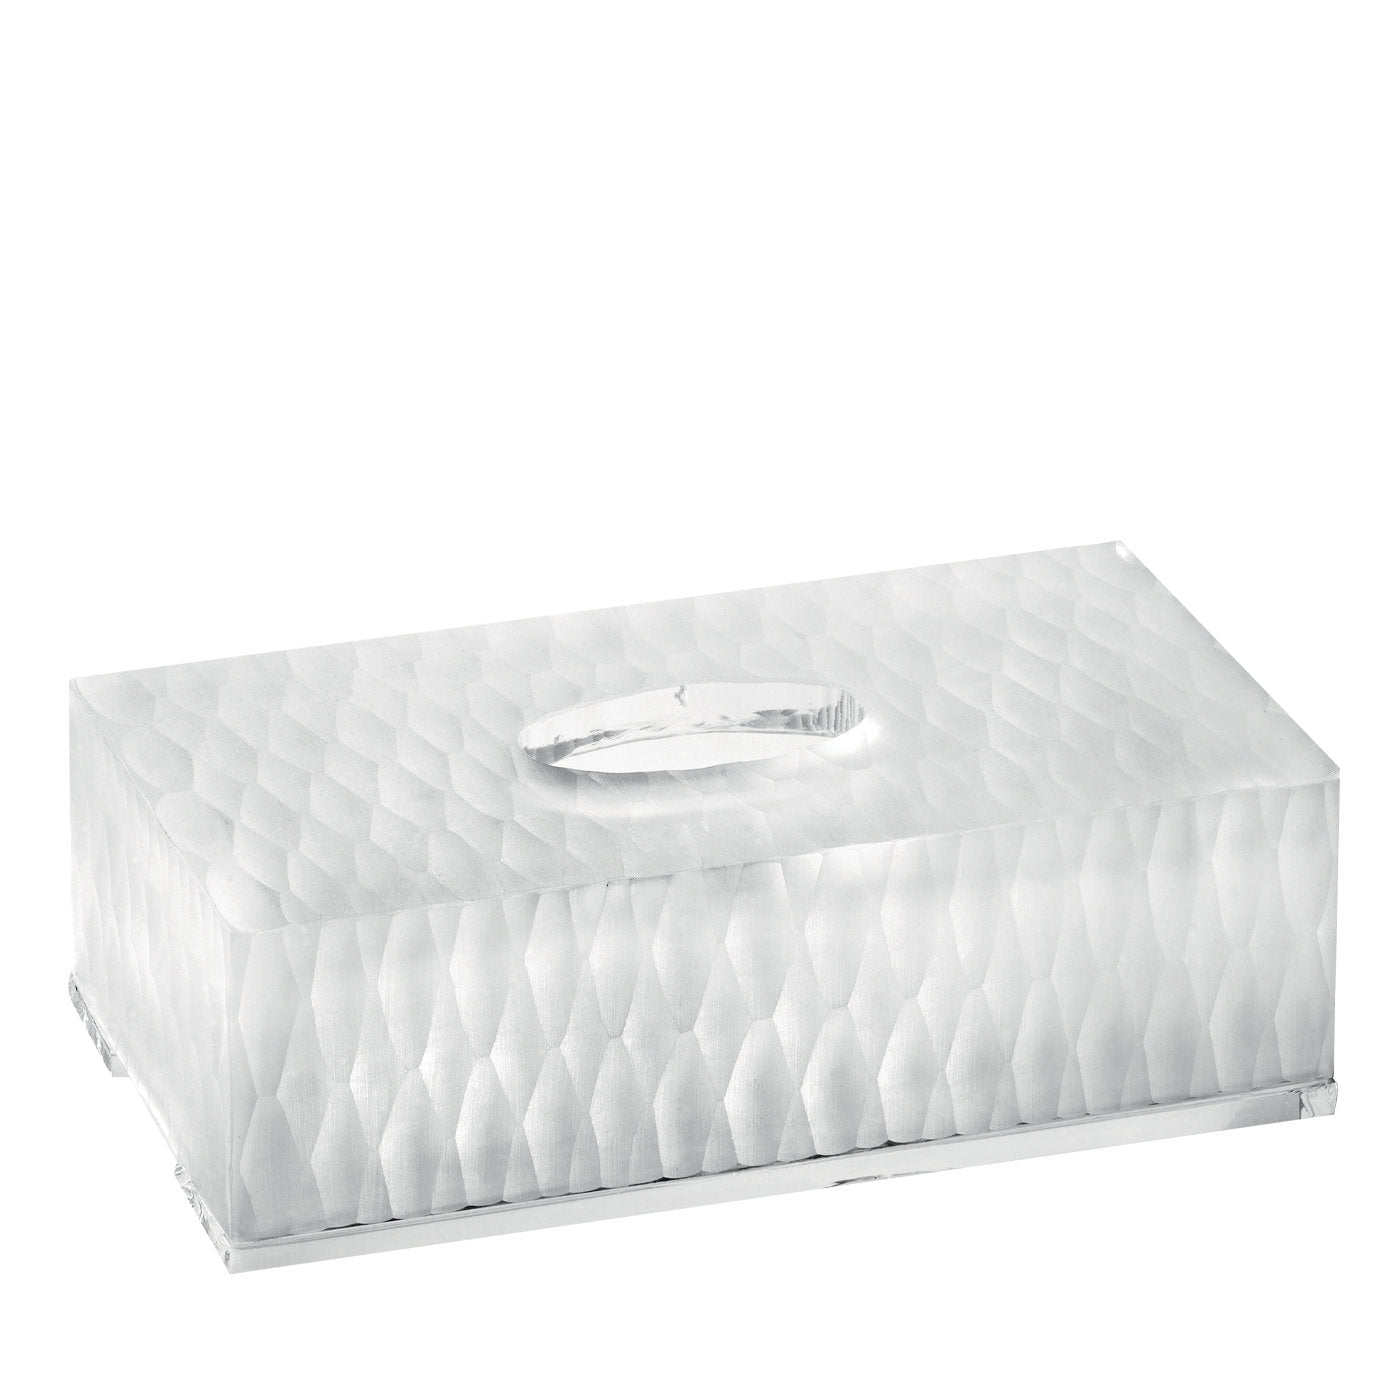 Tapa de caja de pañuelos con diseño hexagonal - Vista principal